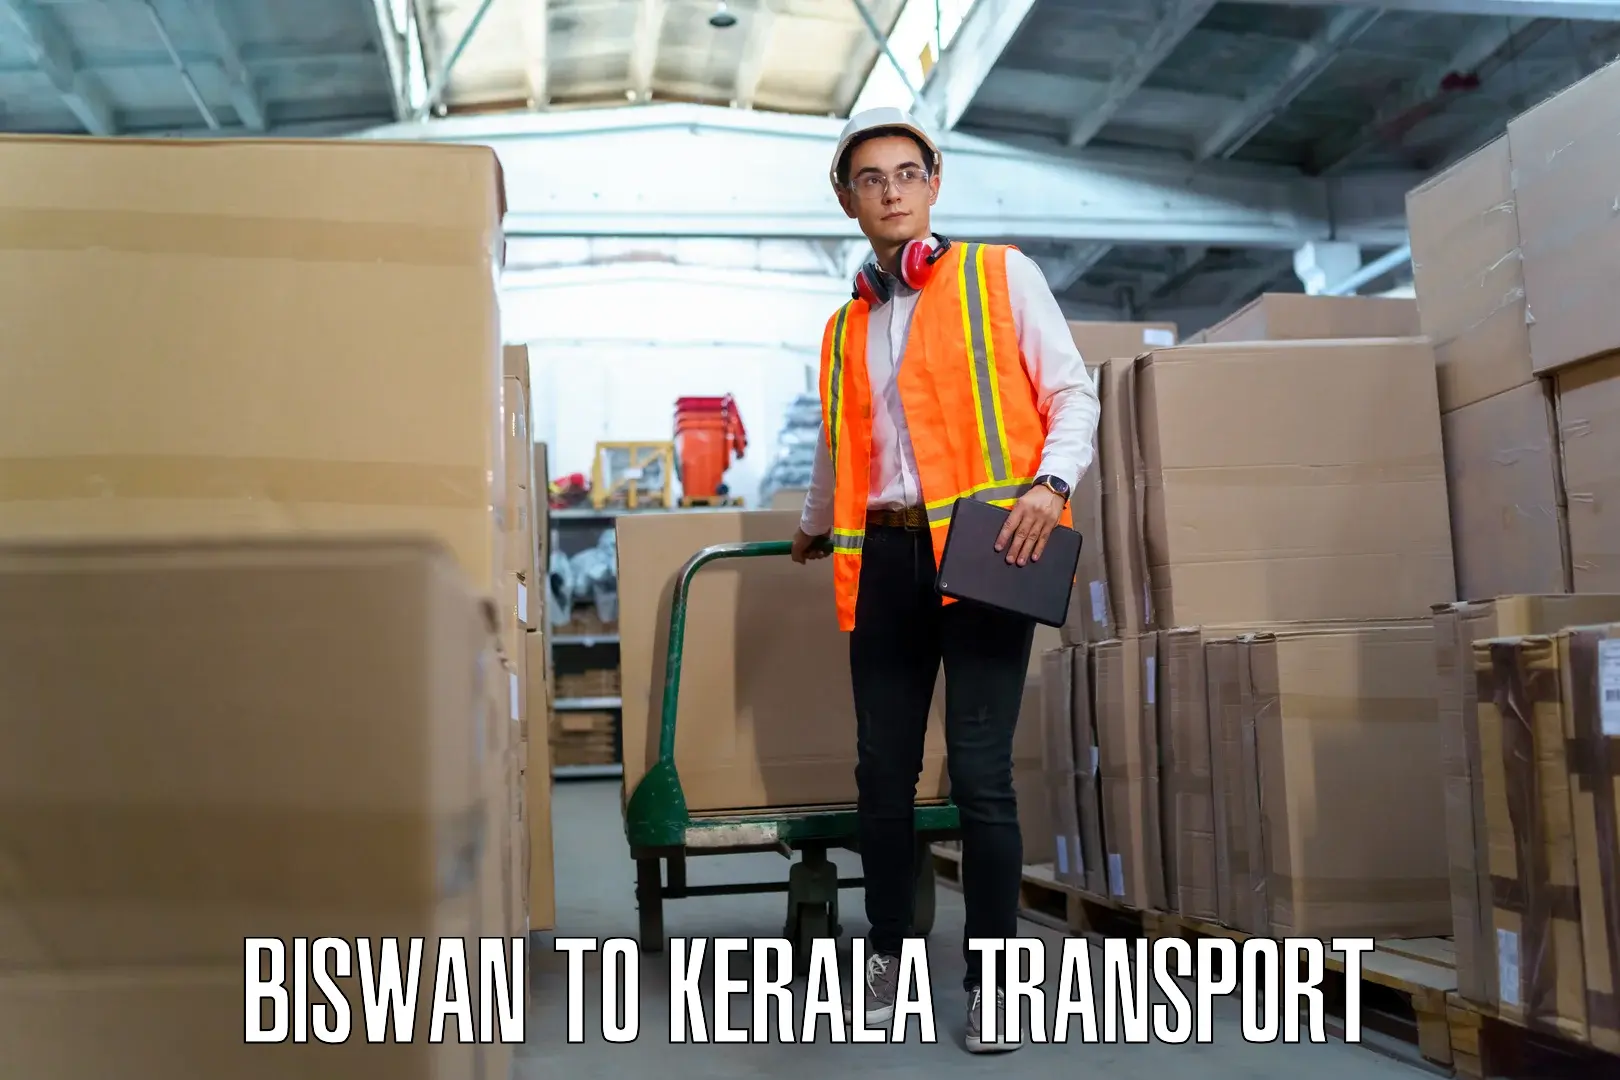 Daily transport service Biswan to Mavelikara